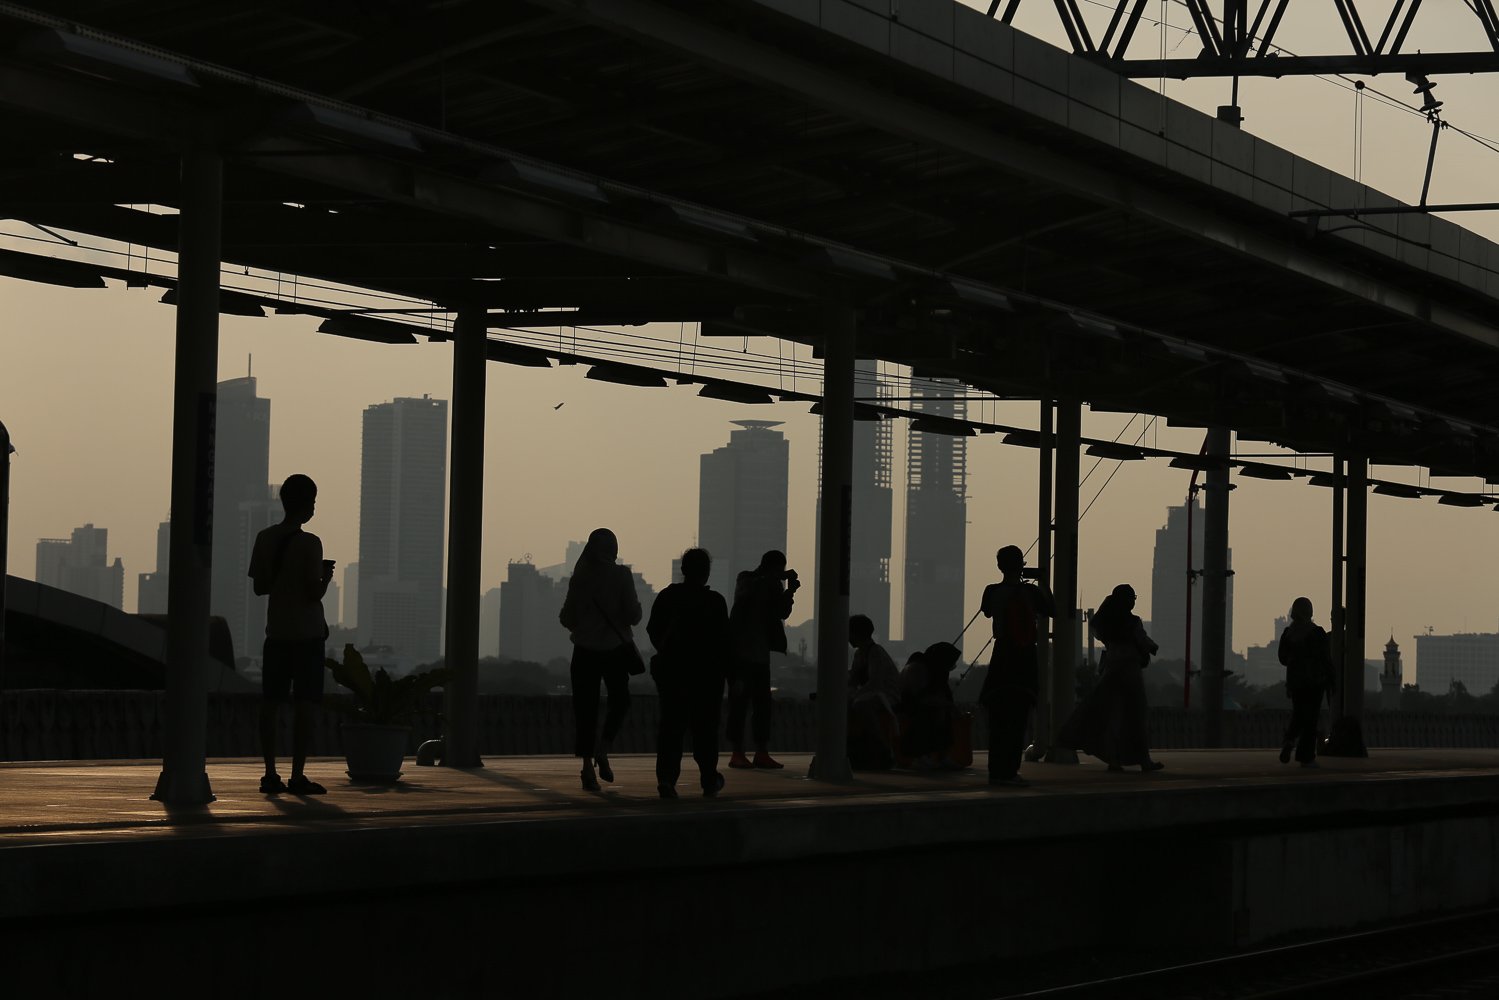 Calon penumpang menunggu kedatangan Kereta Rel Listrik (KRL) di Stasiun Manggarai, Jakarta (12/7). Badan Kependudukan dan Keluarga Berencana Nasional (BKKBN) mengatakan para dewan dari Perserikatan Bangsa-Bangsa (PBB) memprediksikan dunia akan memiliki 8 miliar penduduk pada bulan November 2022.